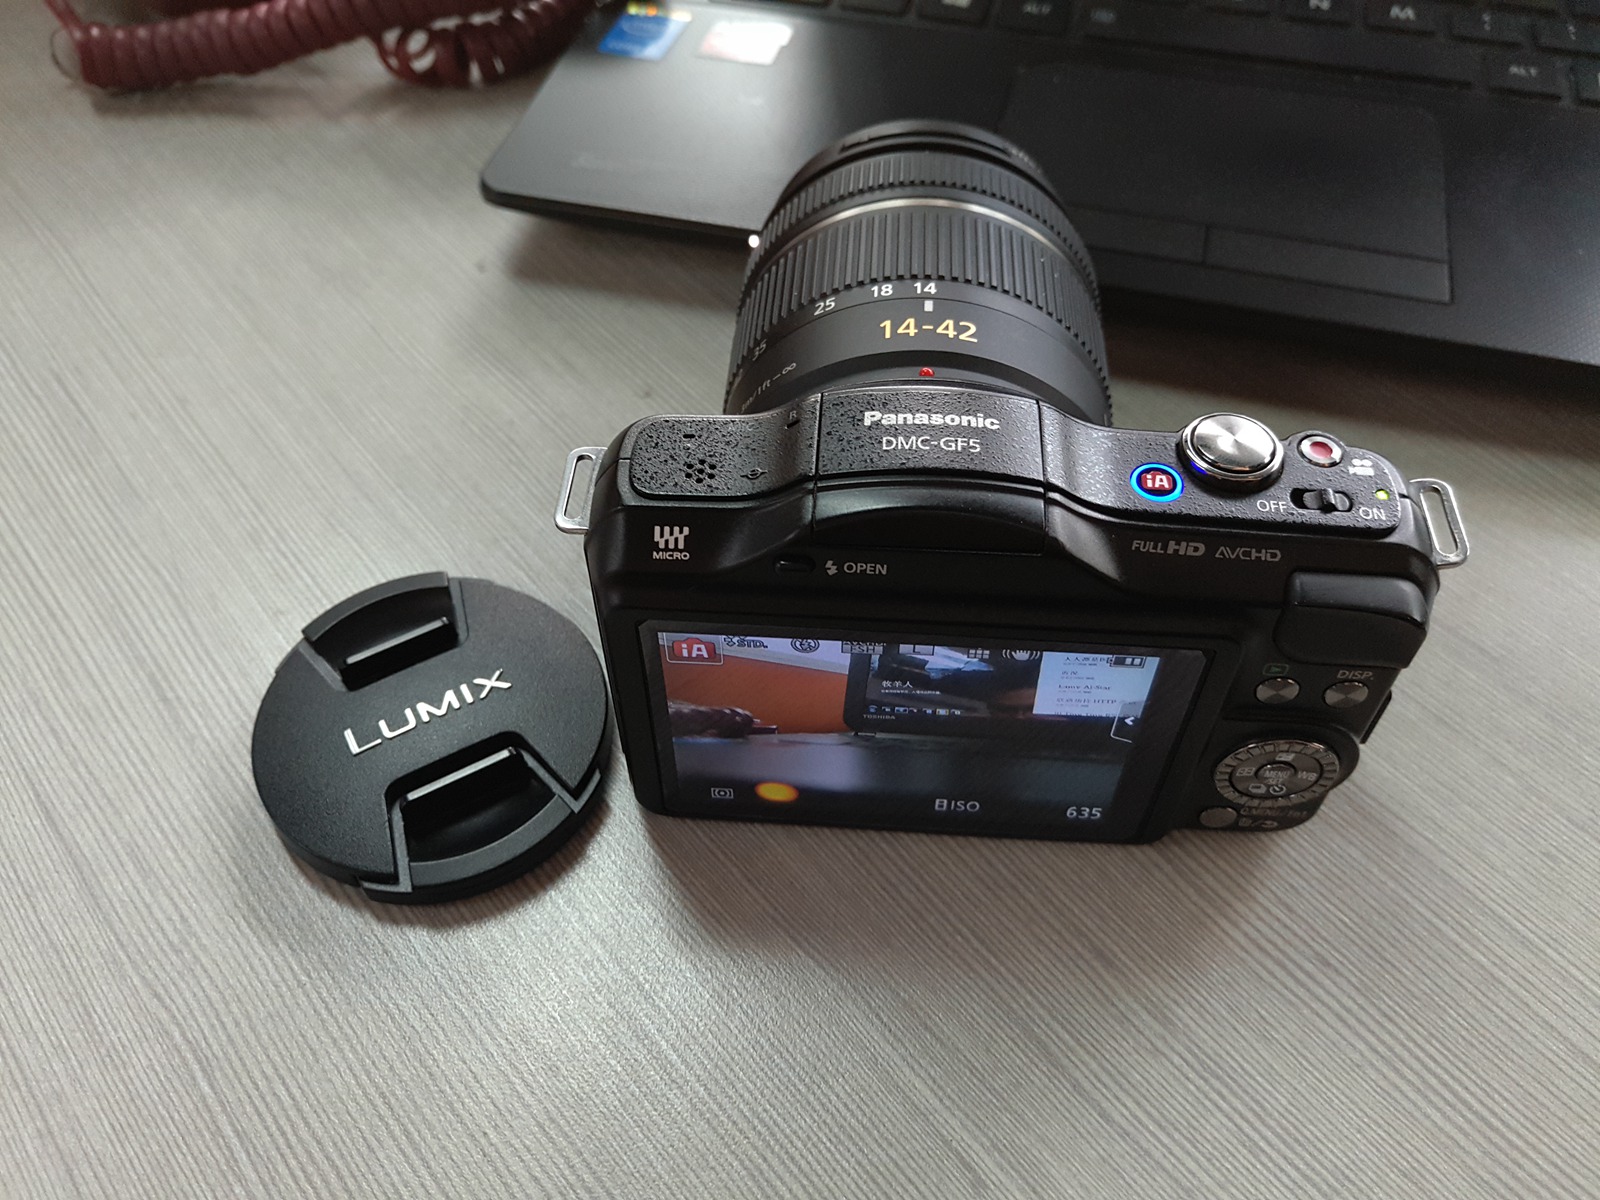 松下相机 Panasonic DMC-GF5